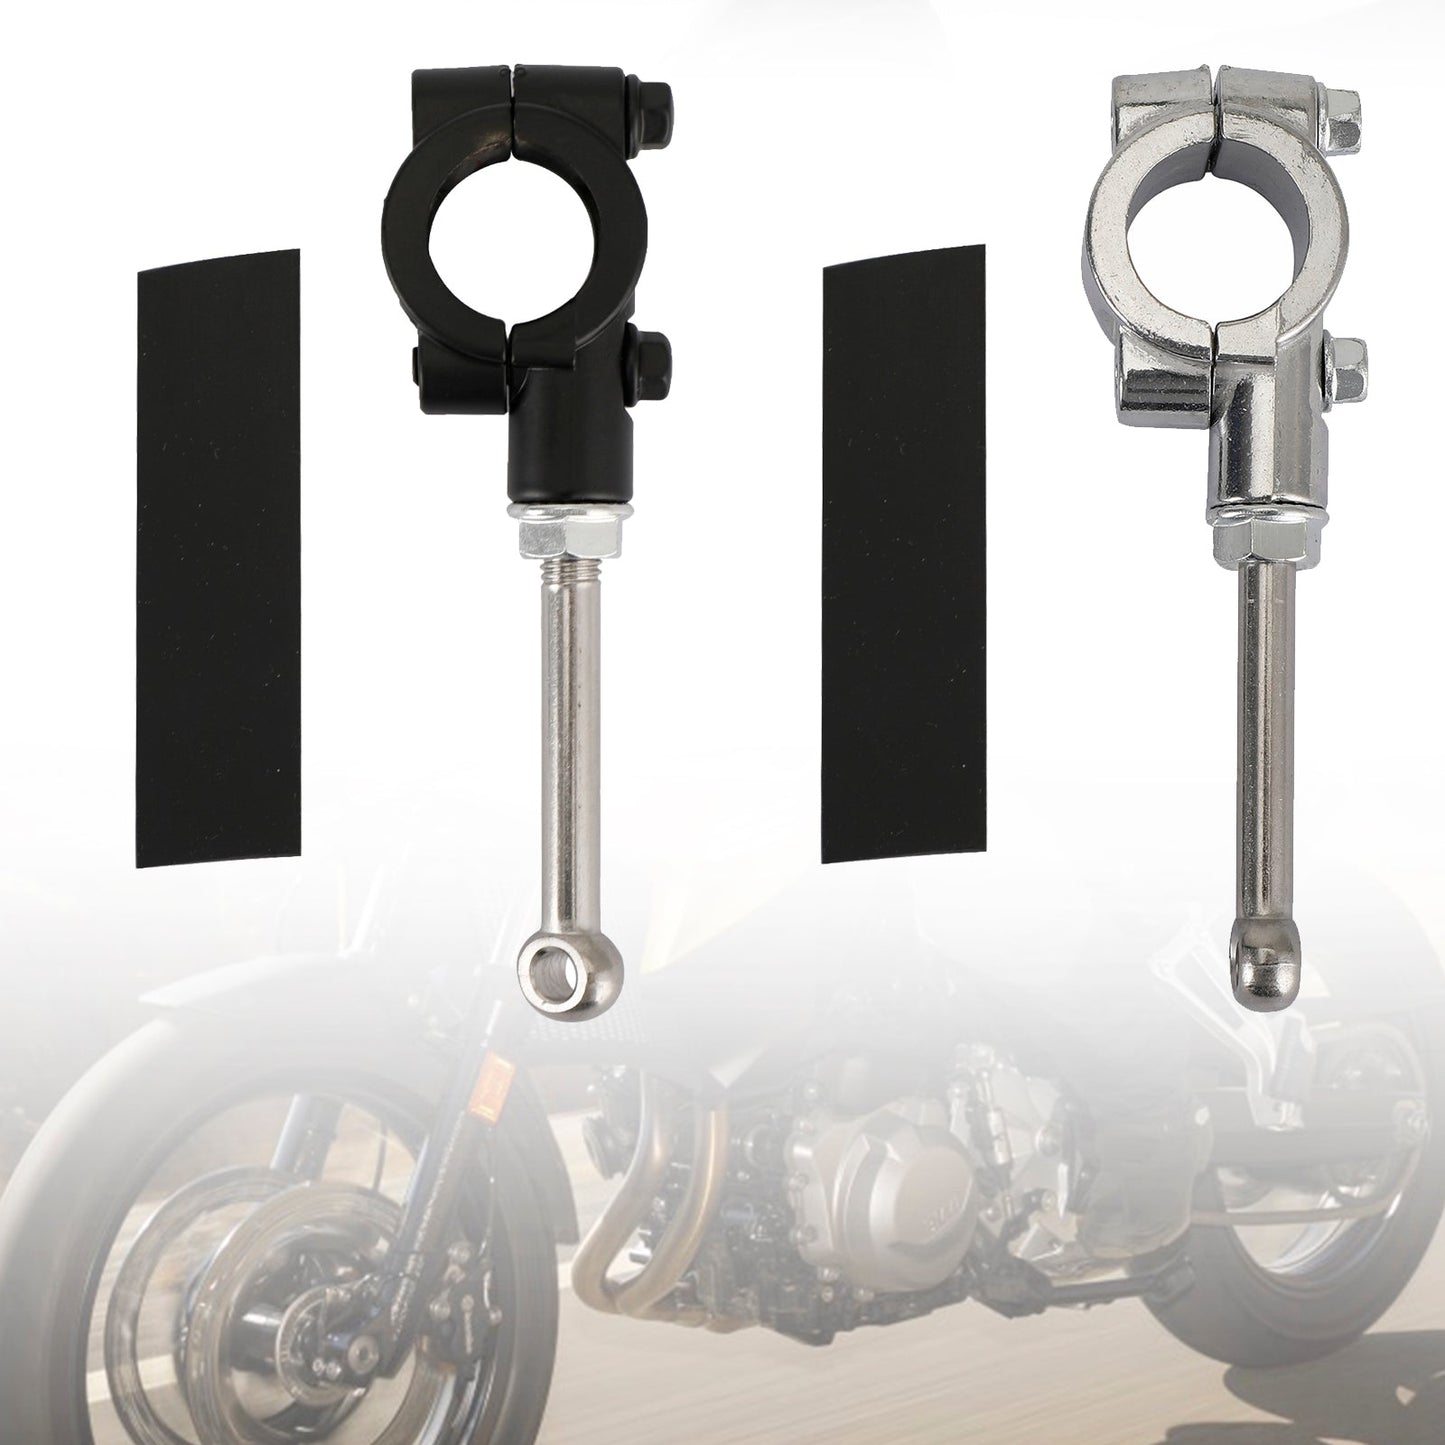 Universal-Motorradständer Kickstand Extension Kit 20-23MM Scooter Support Tool